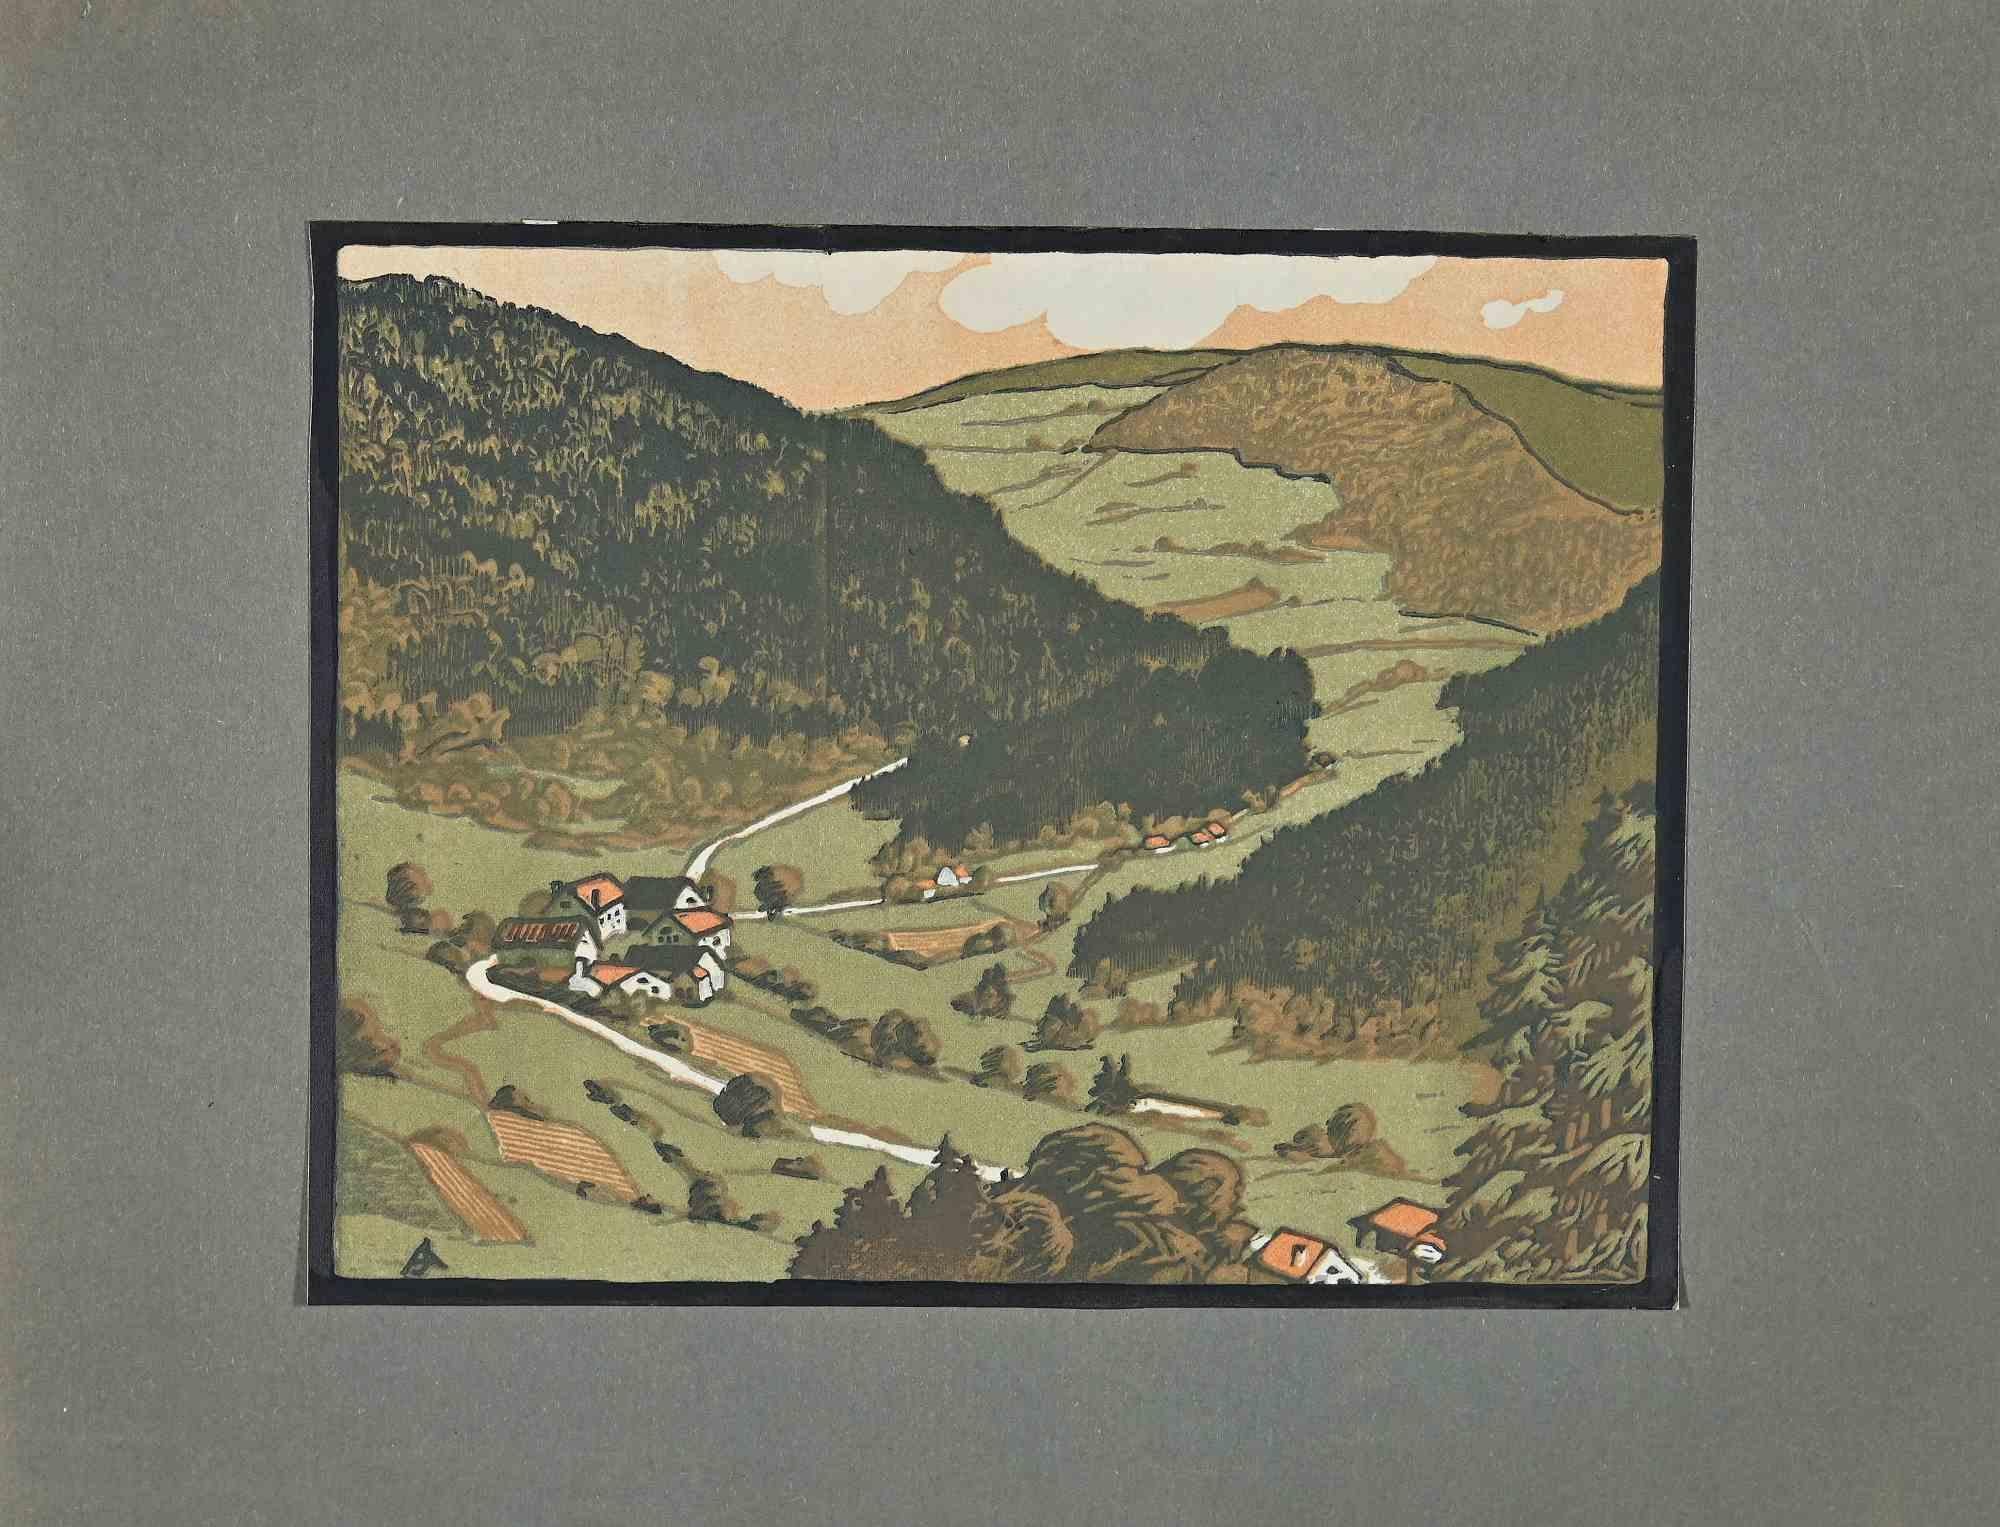 Landschaft ist ein Original-Holzschnitt von A. Jacquol aus dem Januar 1934.

Das schöne Kunstwerk ist in gutem Zustand und enthält einen grünen Karton (25x32,7 cm).

Monogrammiert in der linken unteren Ecke.

Auf der Rückseite ein weiteres kleines